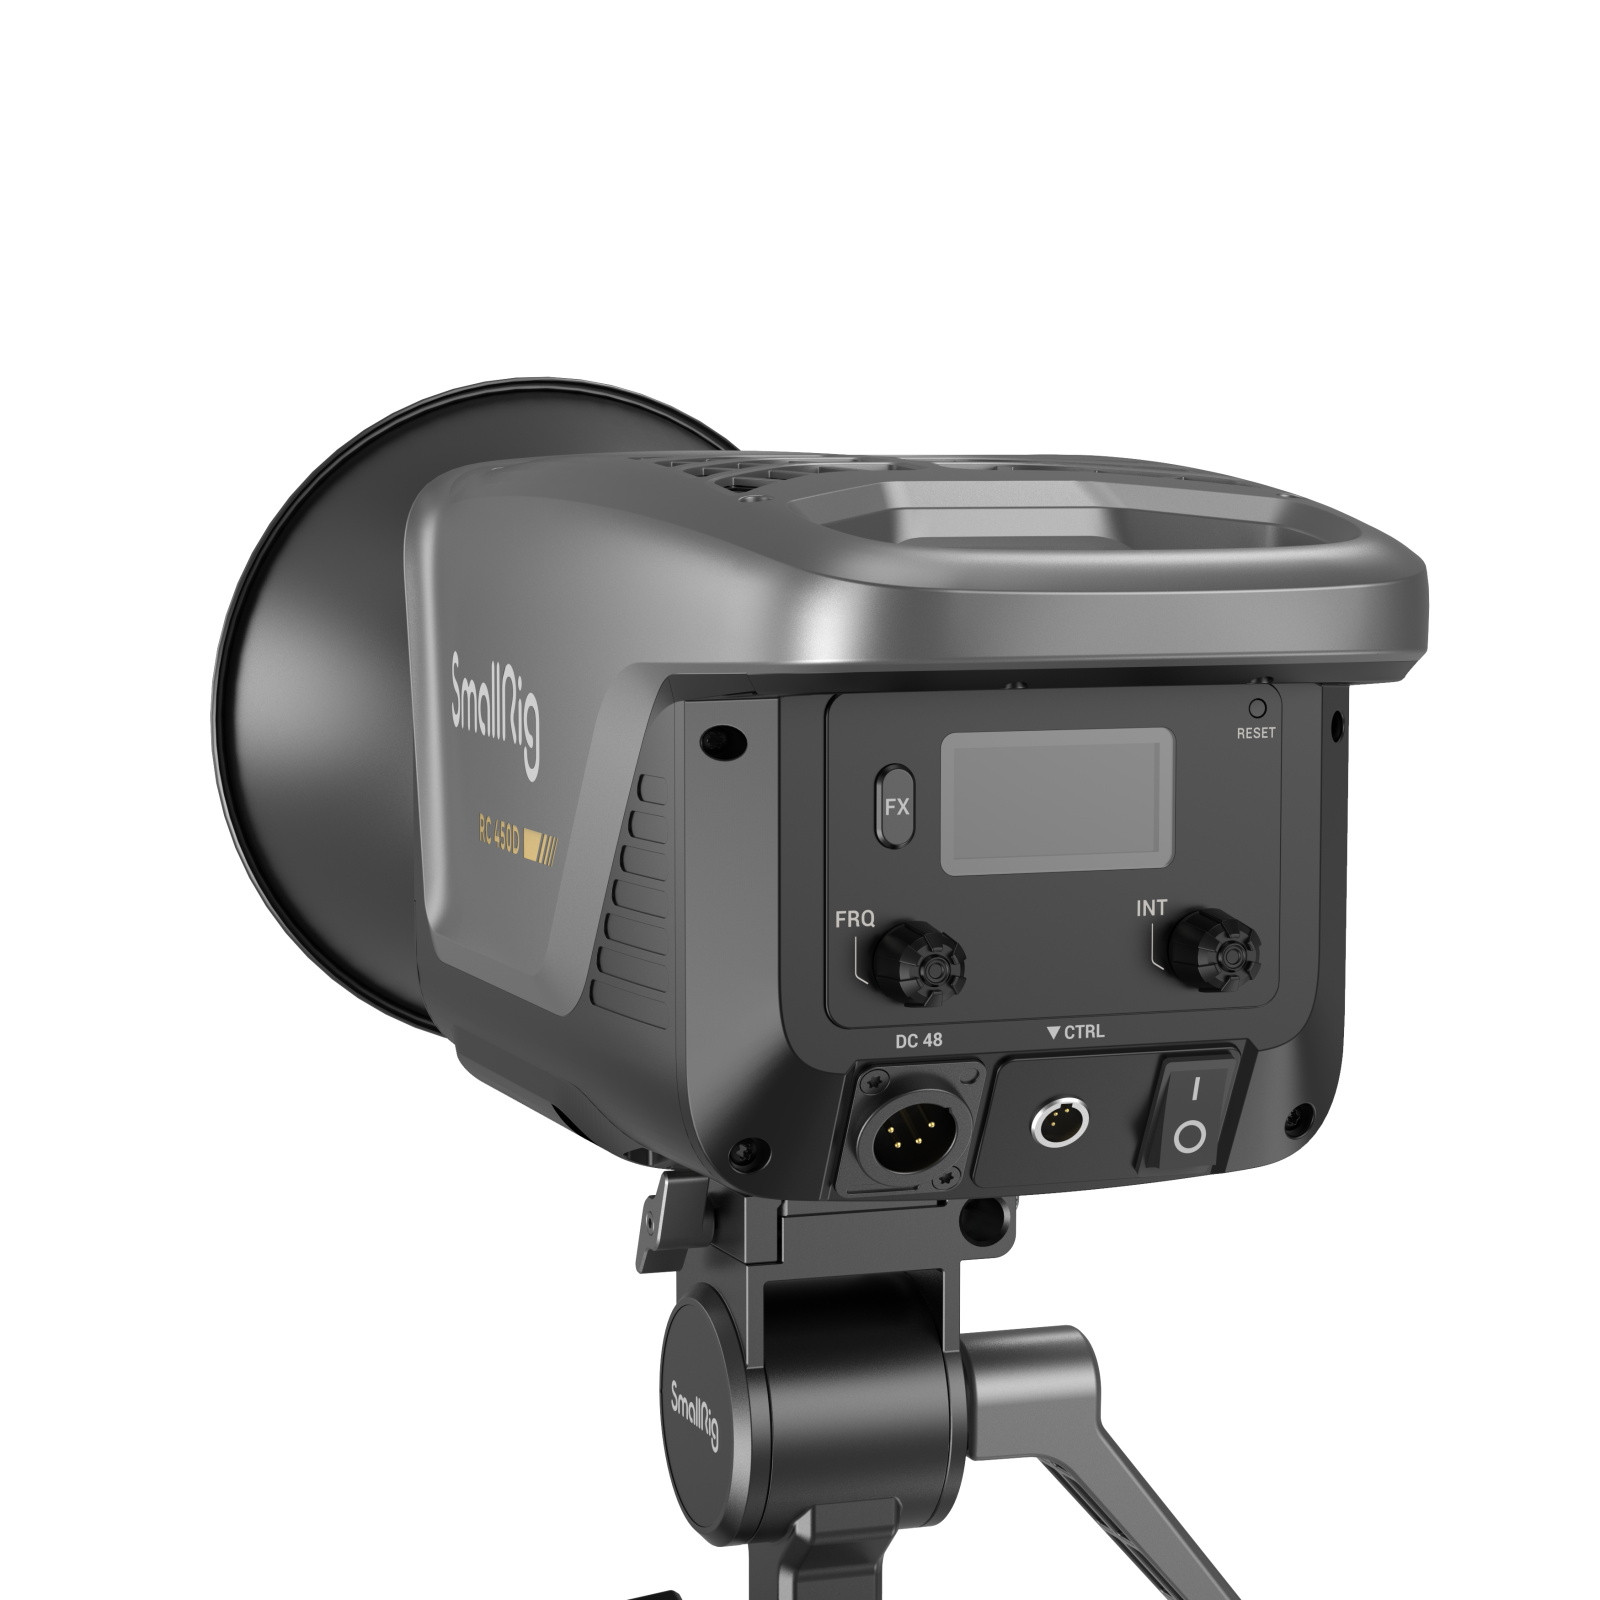 SmallRig RC450D COB LED Video Light (JP) 3974